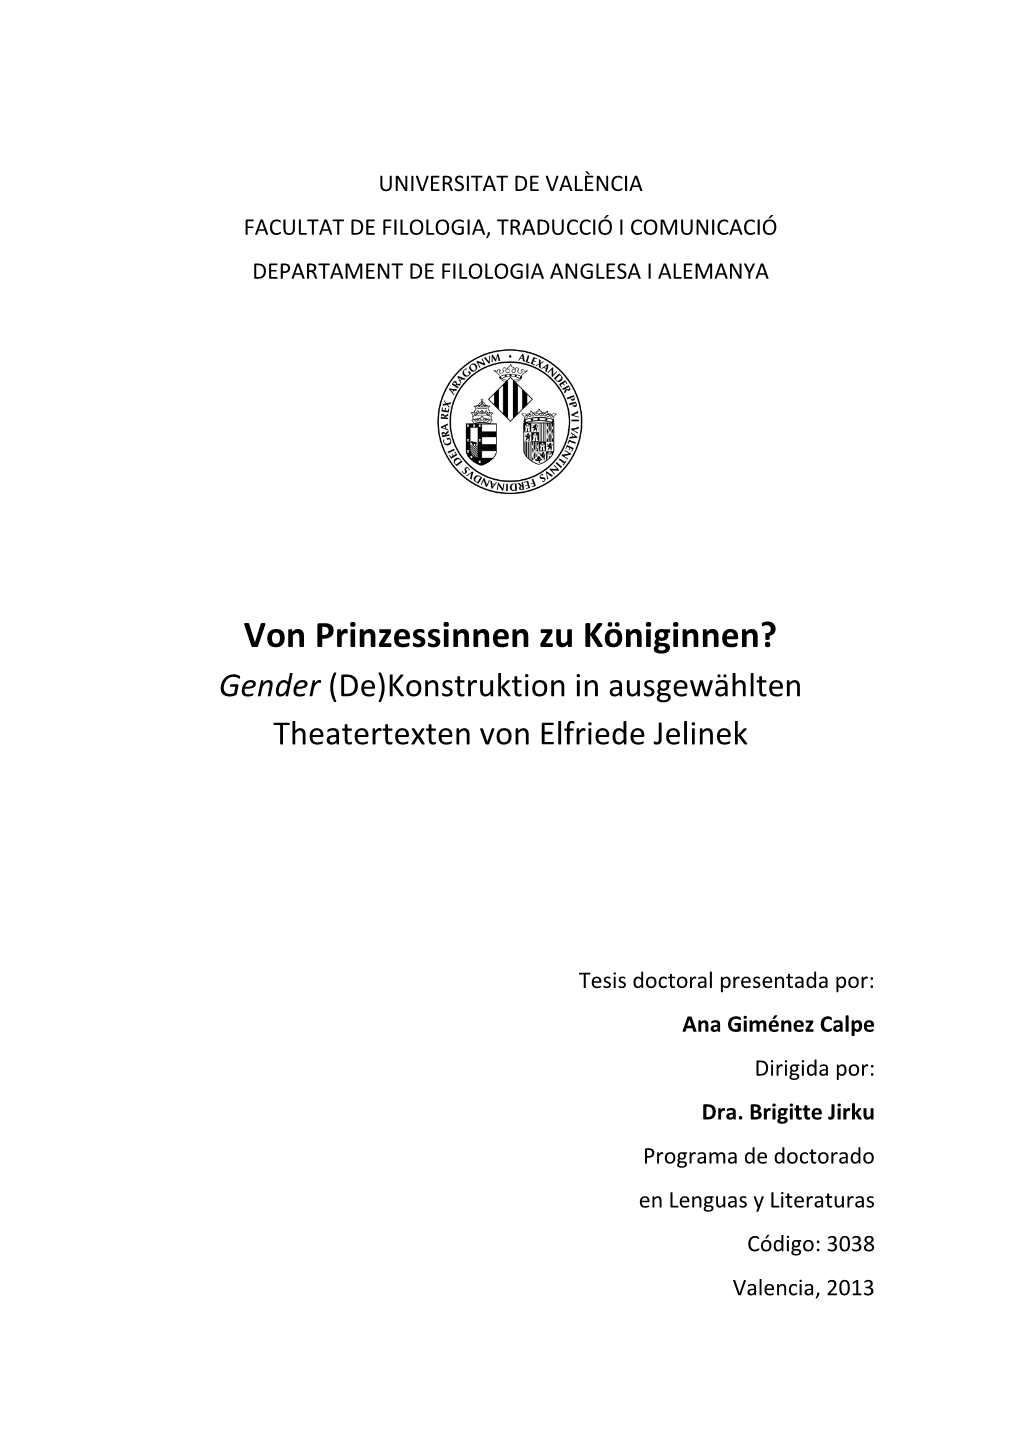 Von Prinzessinnen Zu Königinnen? Gender (De)Konstruktion in Ausgewählten Theatertexten Von Elfriede Jelinek